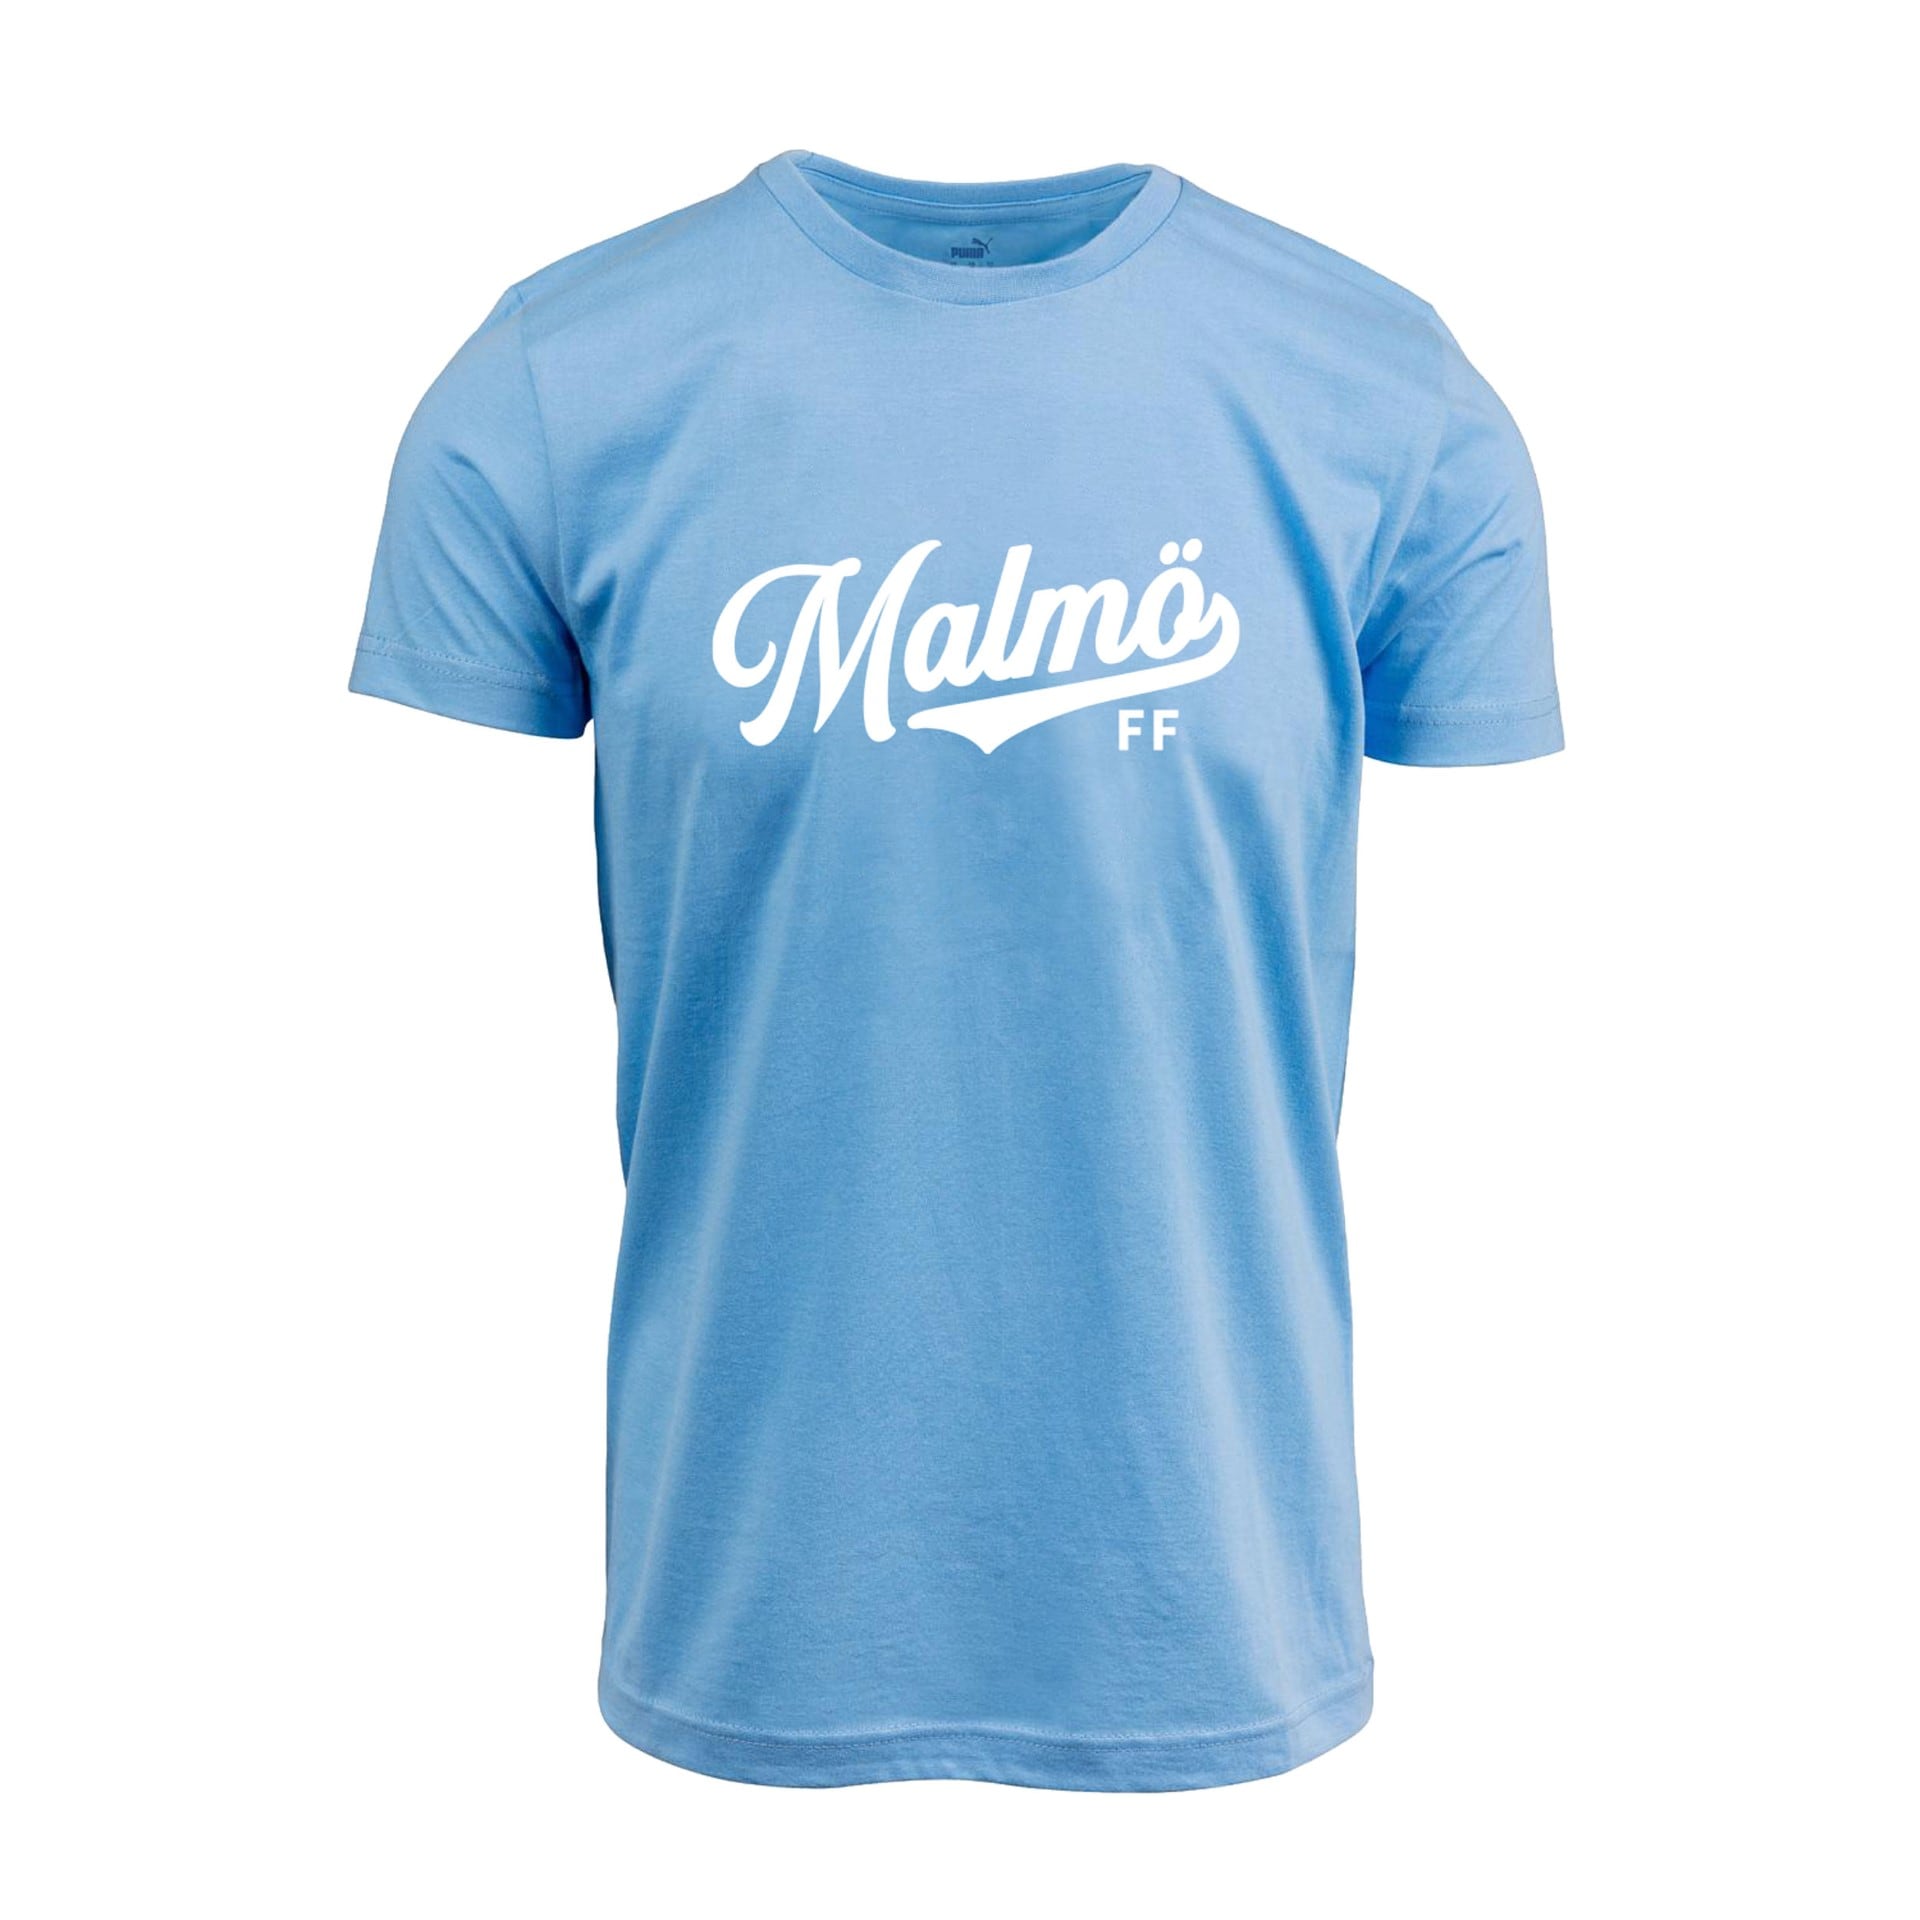 Puma t-shirt ljusblå Malmö FF